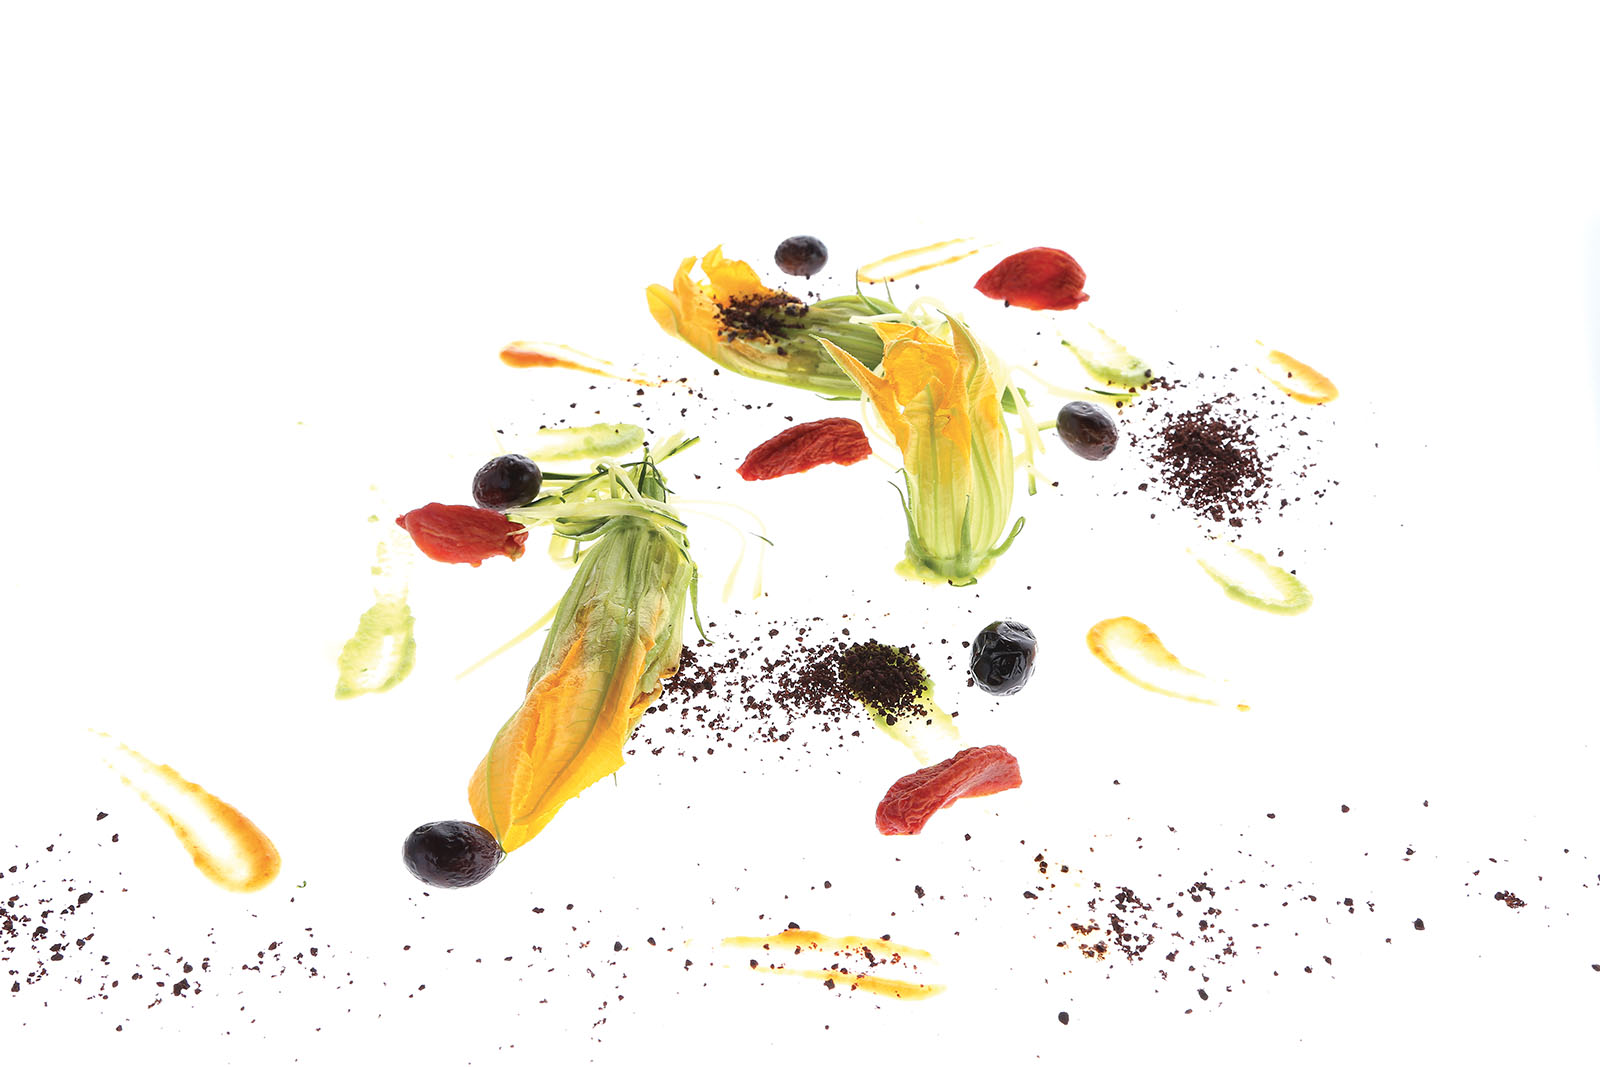 Fiori di zucca con avocado, pomodorini canditi e olive amare